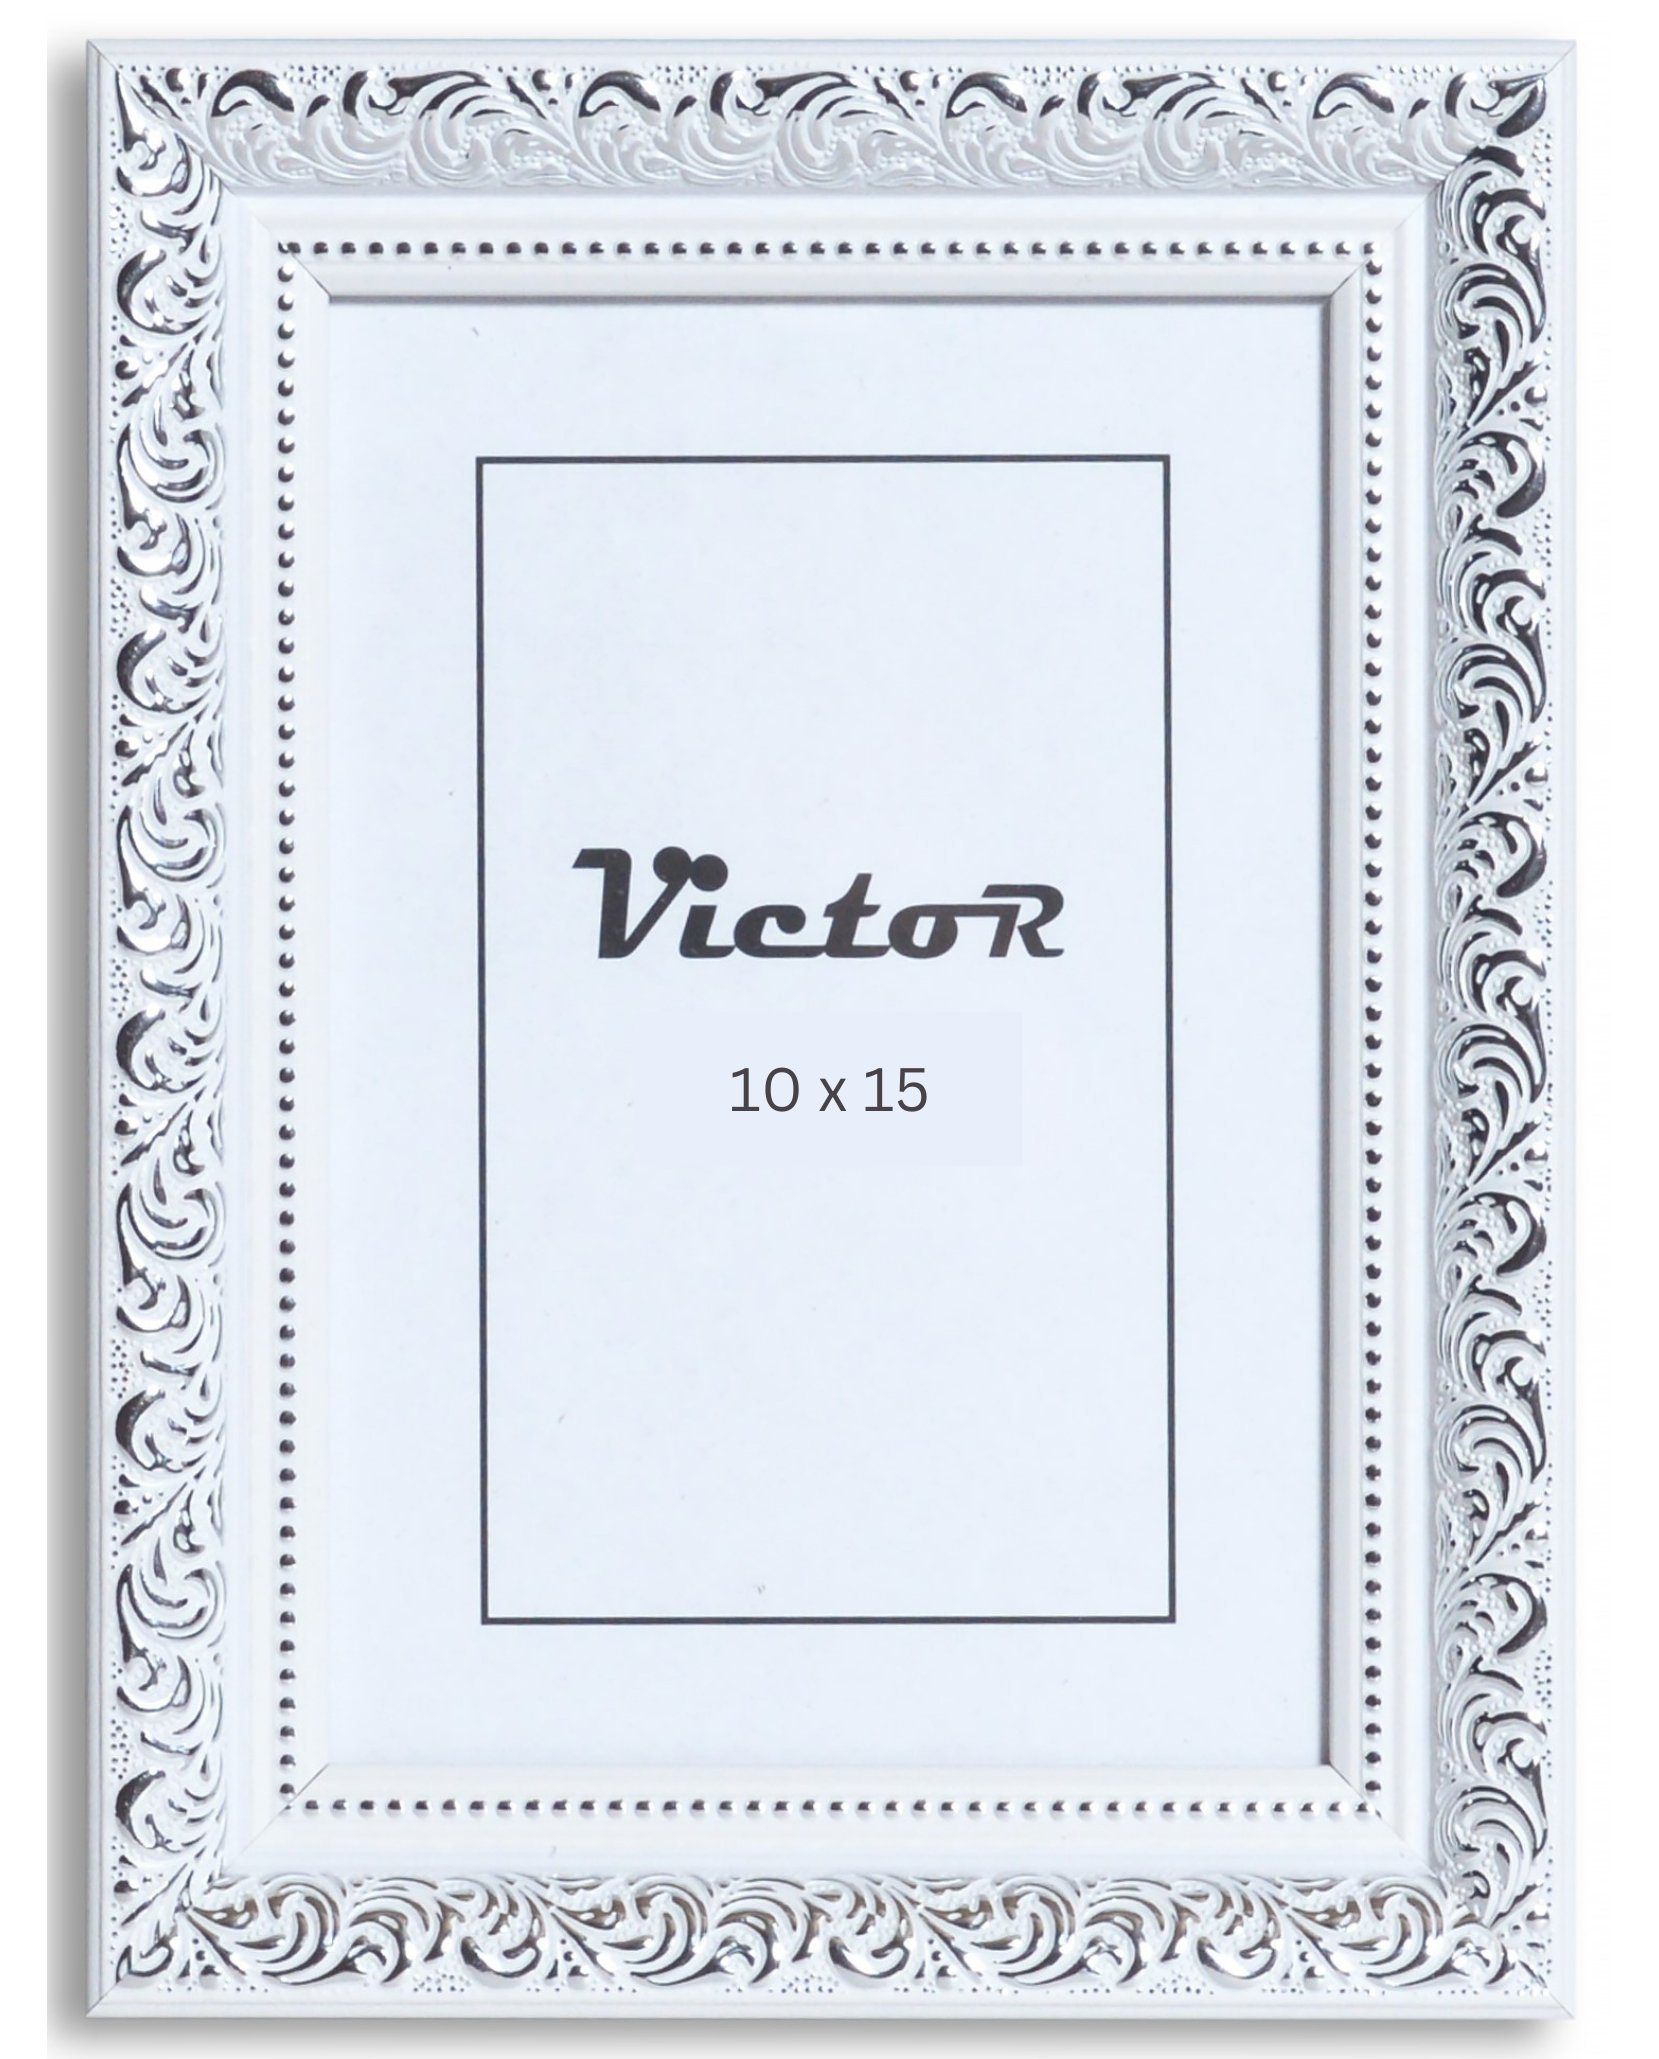 Victor (Zenith) Bilderrahmen Rubens, Bilderrahmen 10x15 cm Weiß Silber A6, Bilderrahmen Barock, Antik